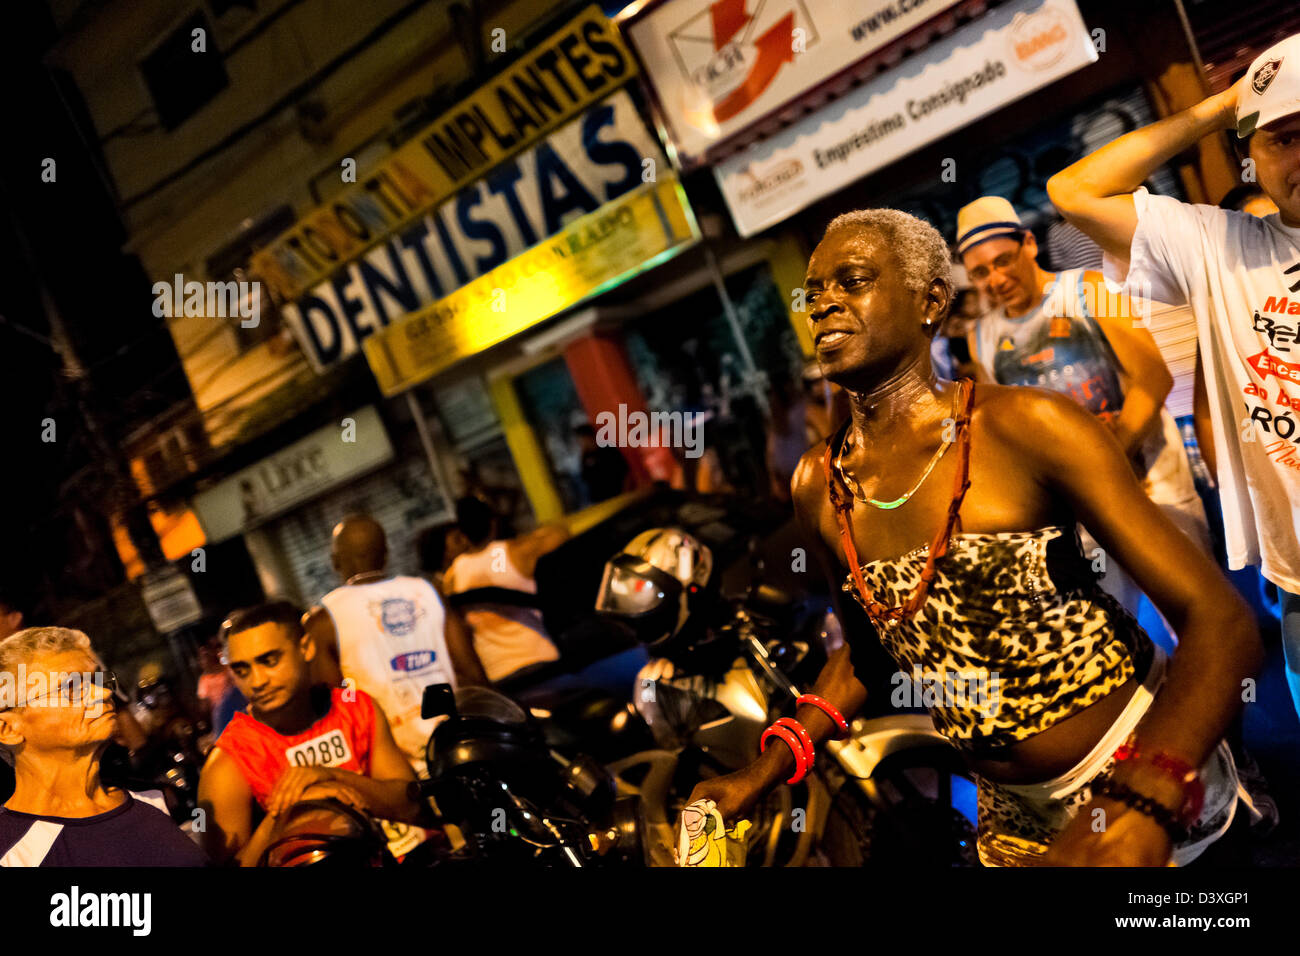 A Brazilian transvestite performs during the Carnival parade in the favela of Rocinha, Rio de Janeiro, Brazil. Stock Photo